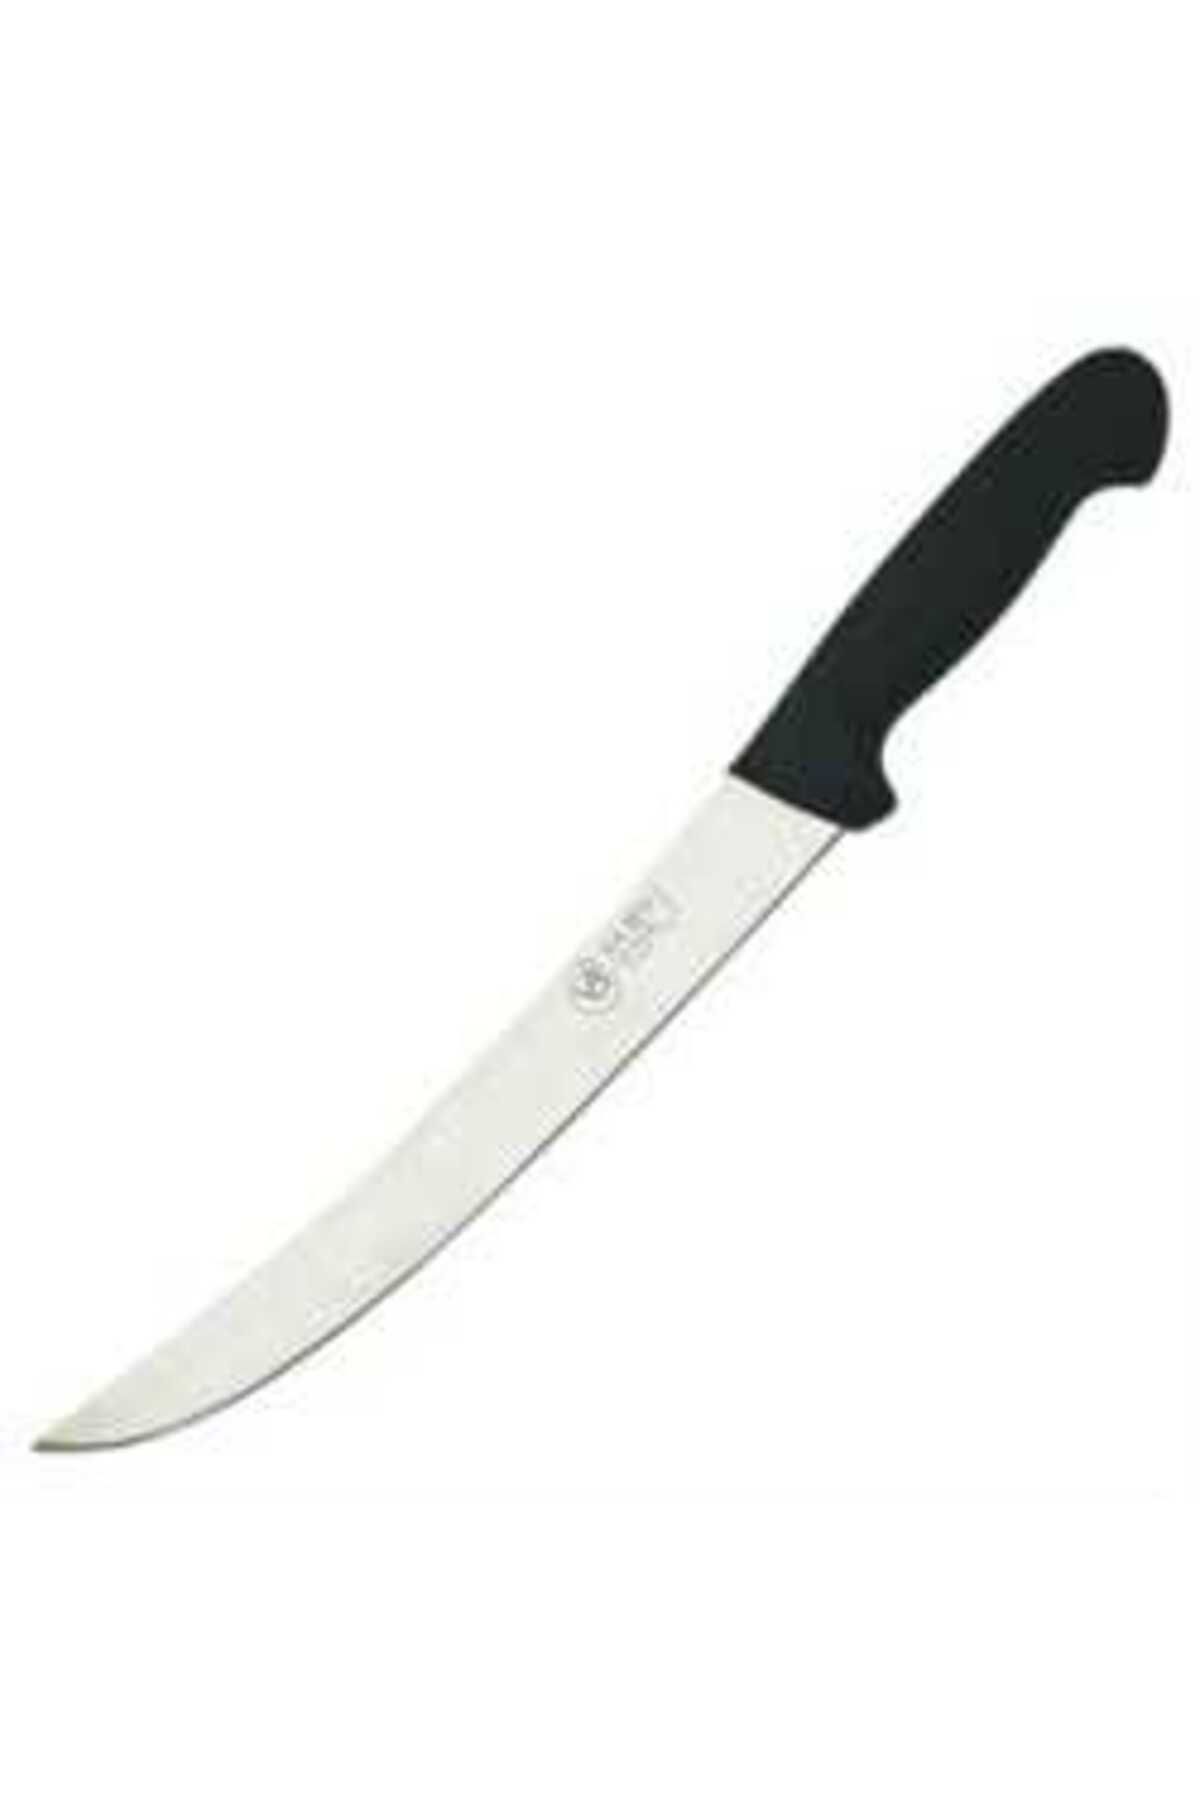 Vardı Kasap Bıçağı Siyah 26 Cm